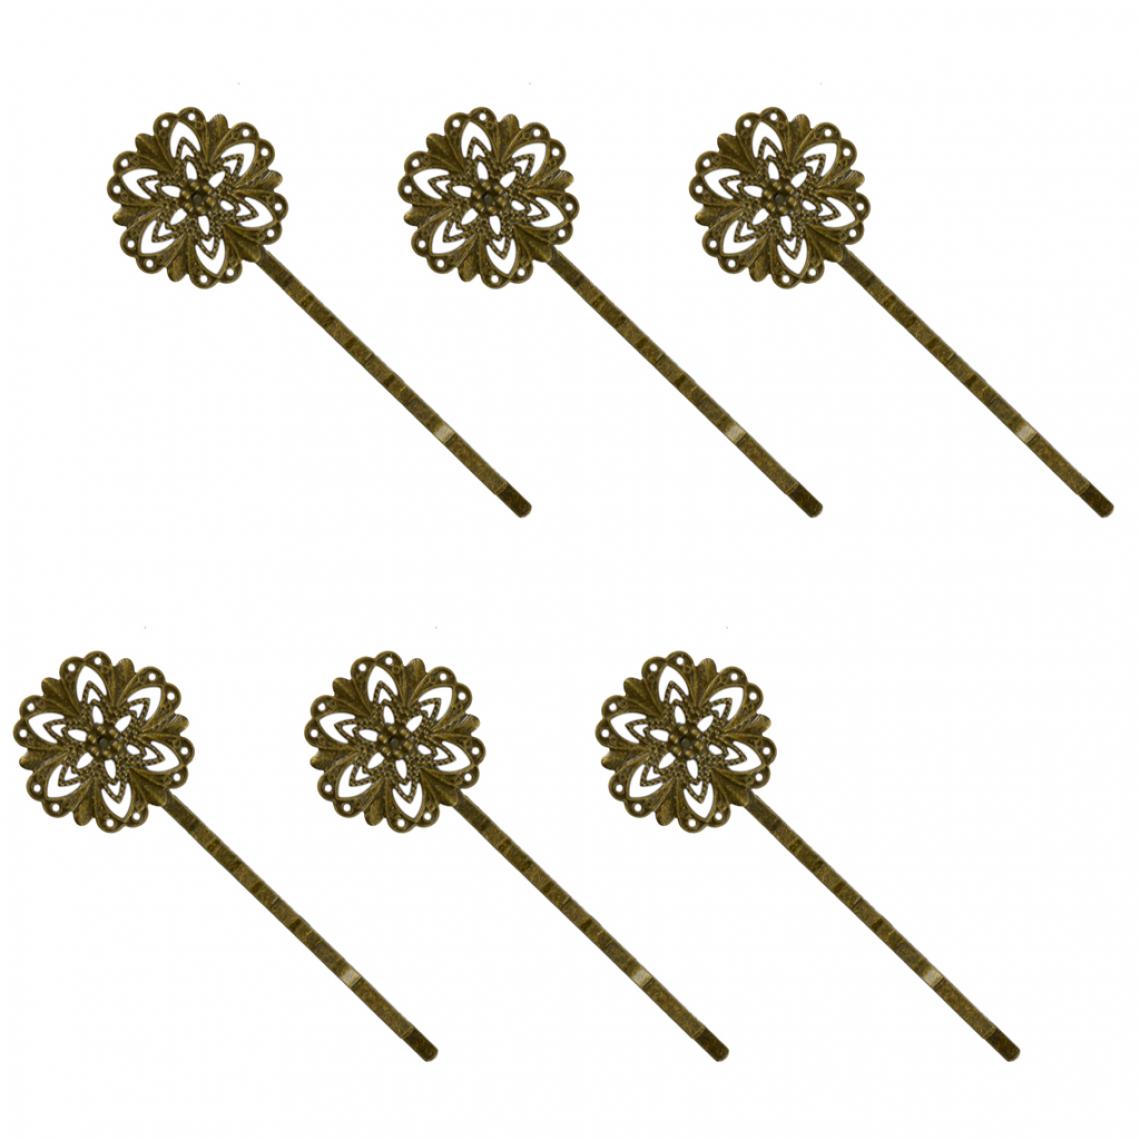 marque generique - 6pcs Rétro Pince Epingle à Cheveux Vintage Pin Barrette Fleur - Bronze Antique - Perles